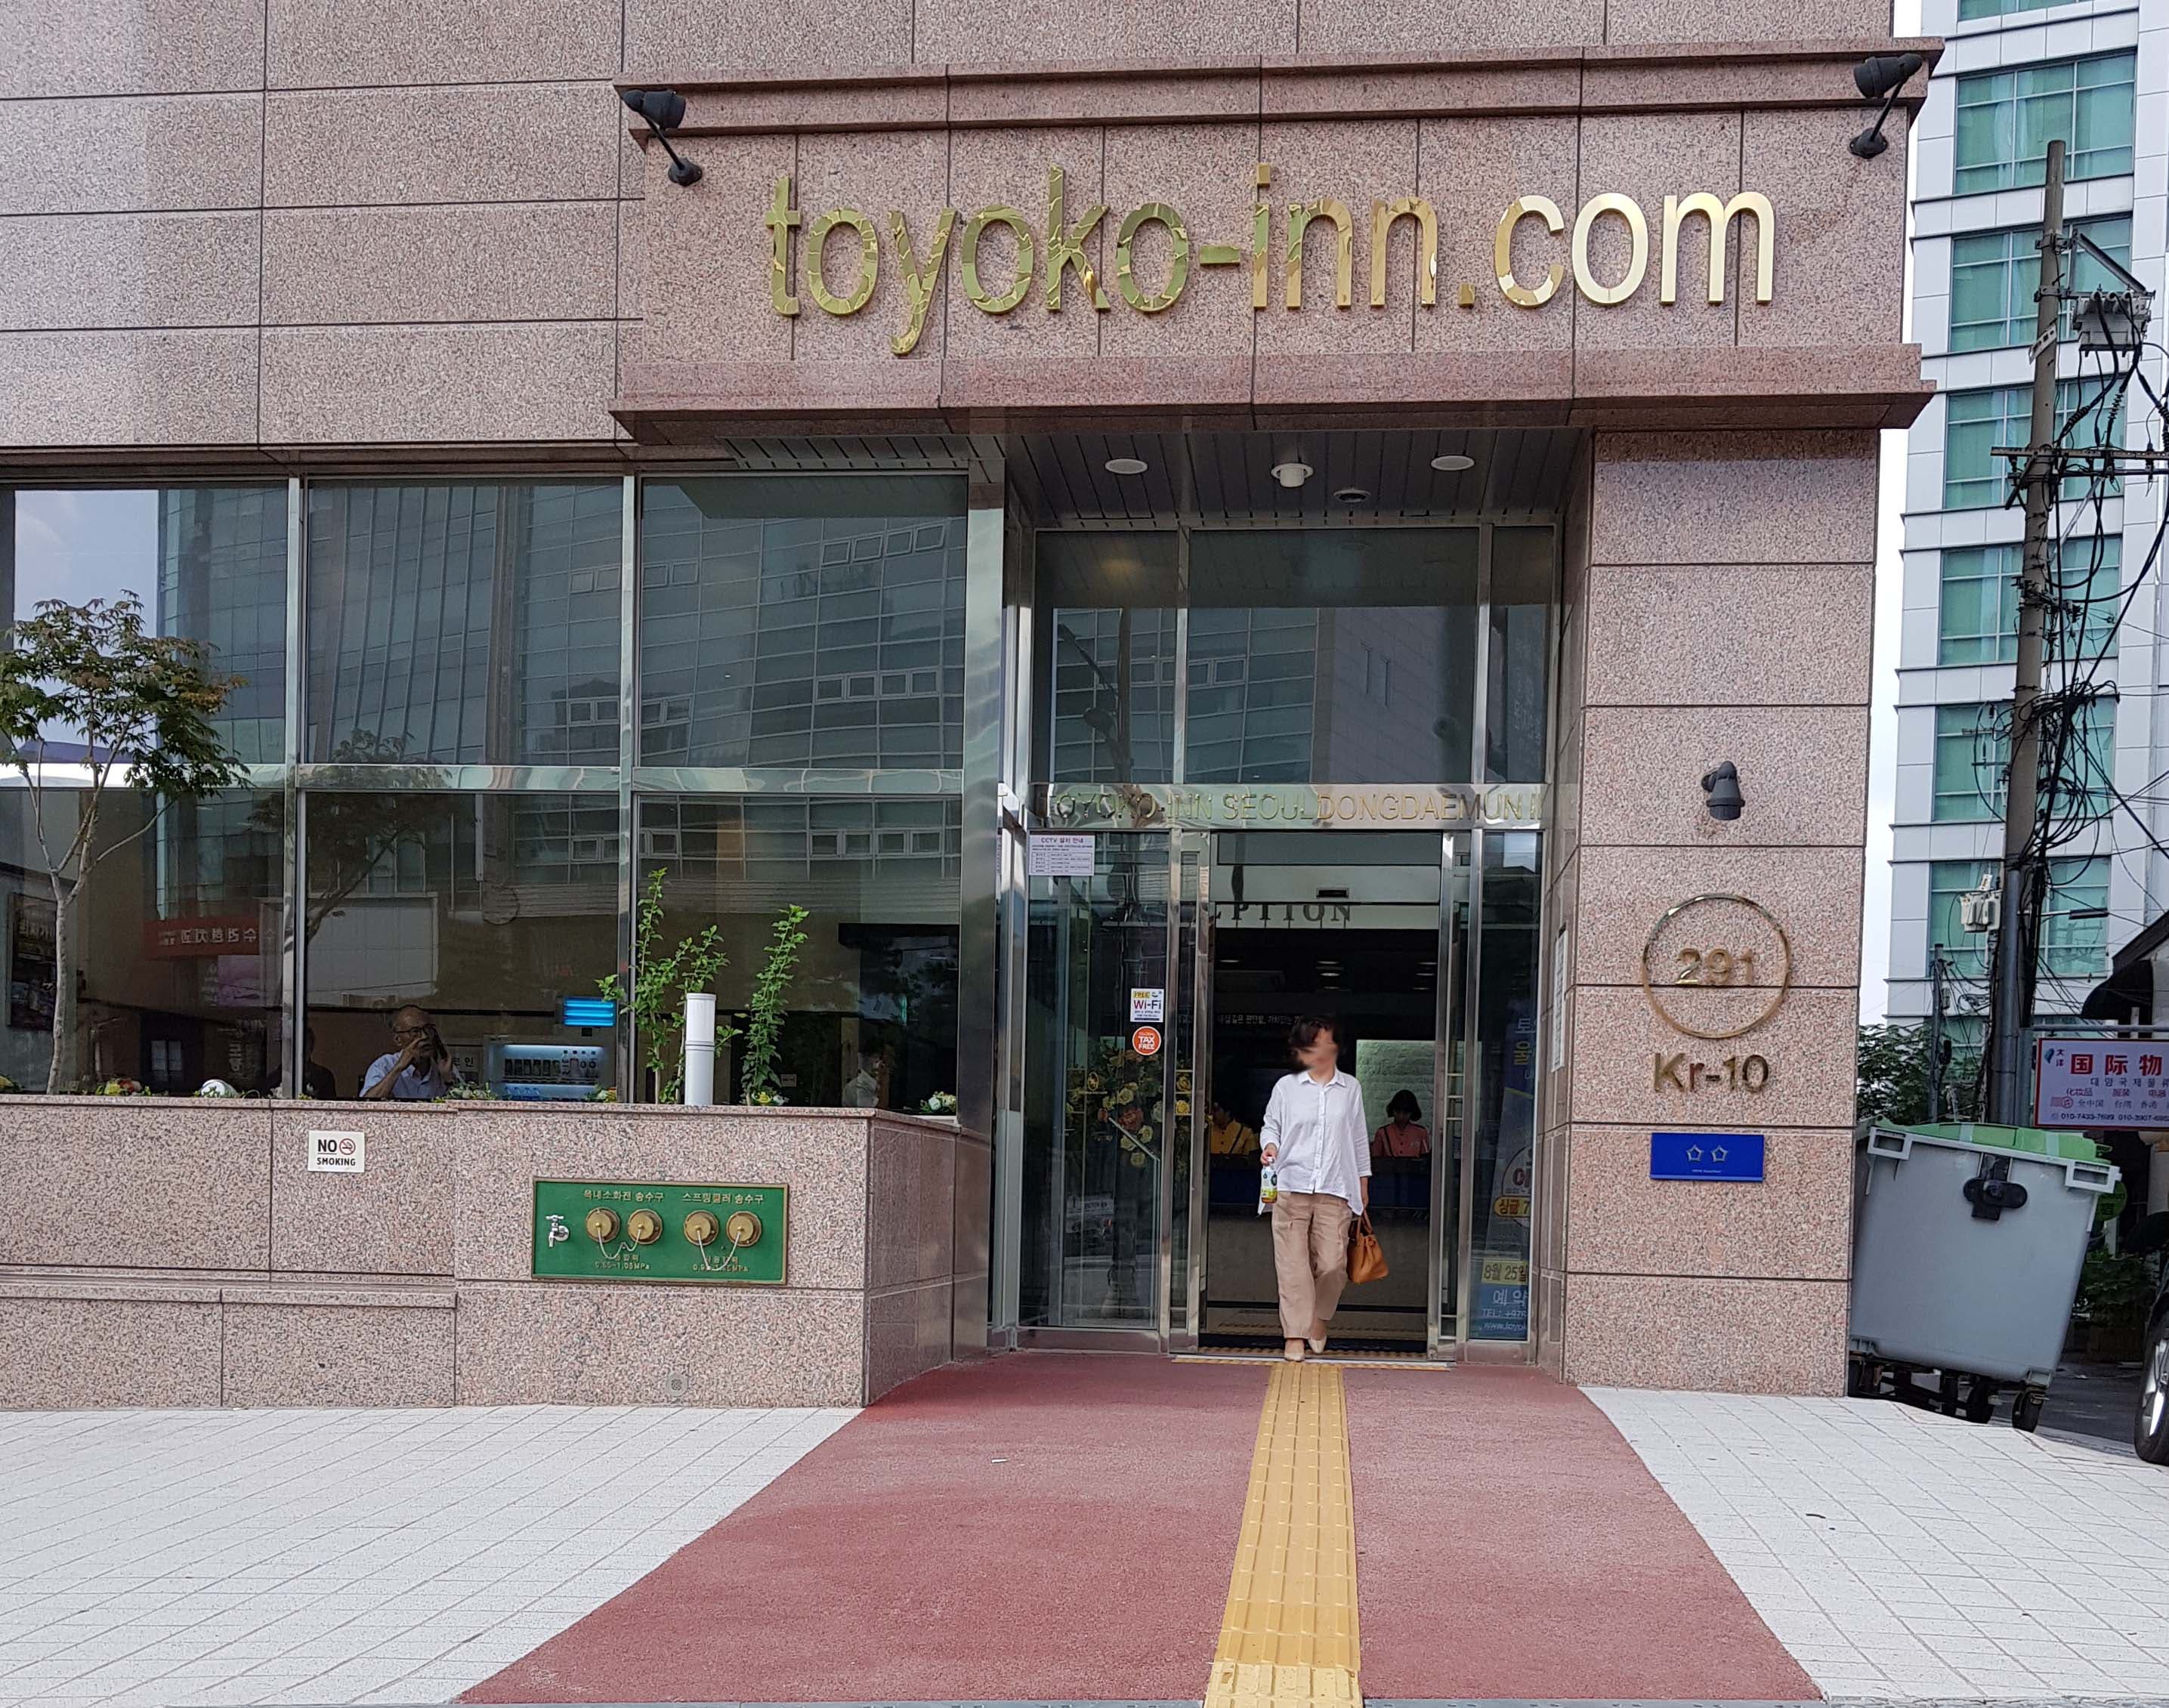 주출입구0 : 점자블록이 설치되어 있는 토요코인 서울동대문2 주 출입구 전경